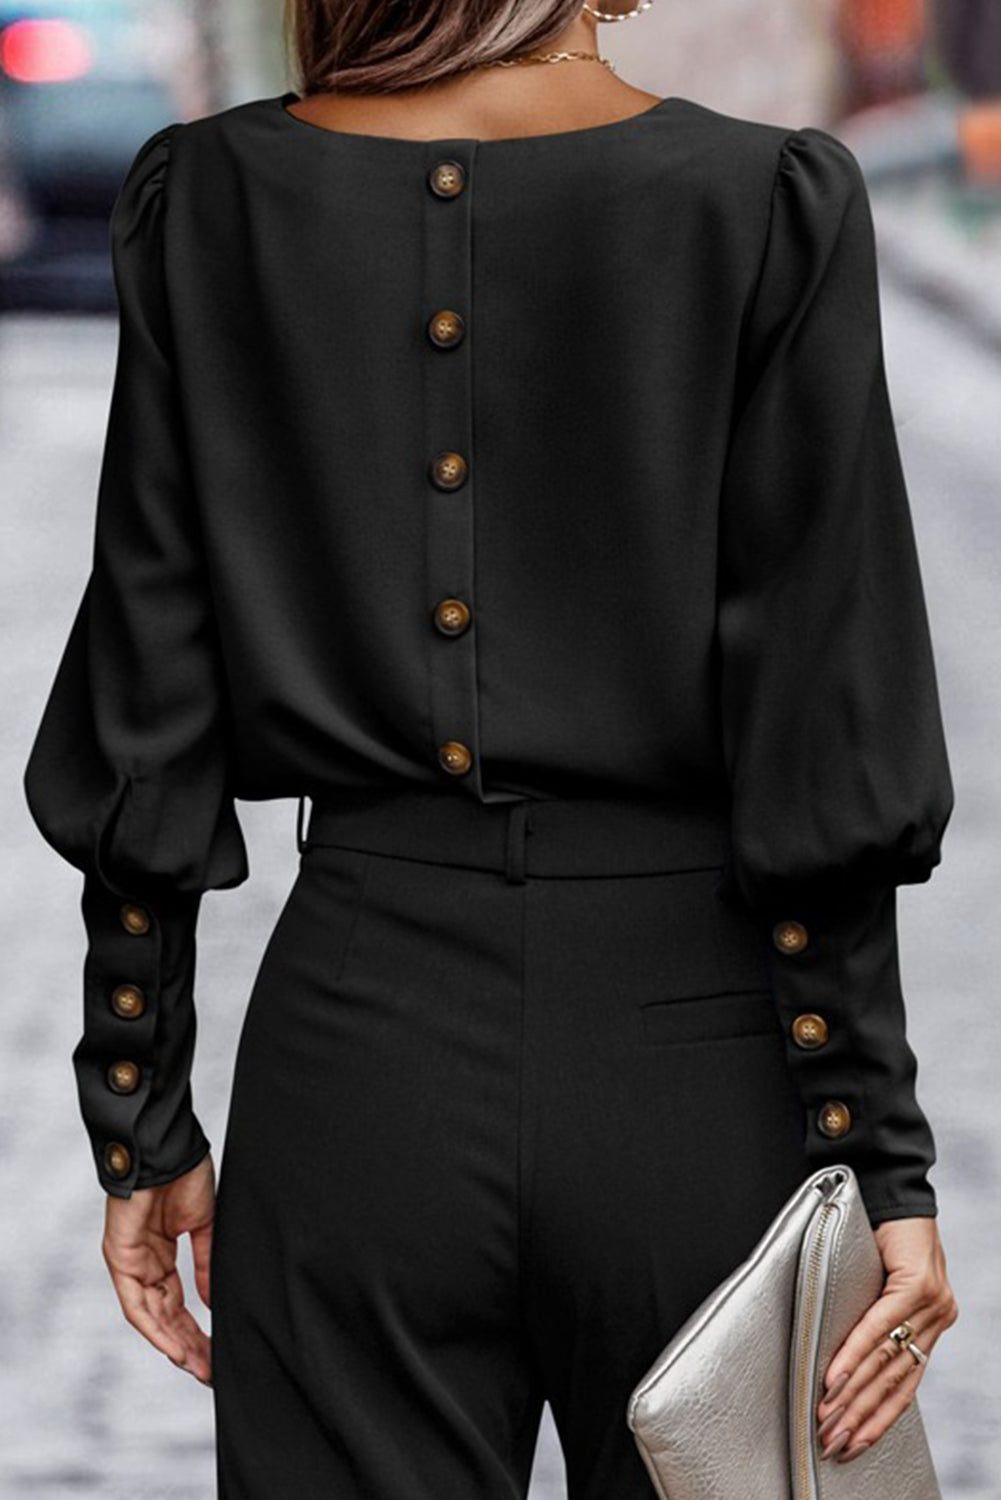 Crna obična bluza s puf rukavima s gumbima i manžetama